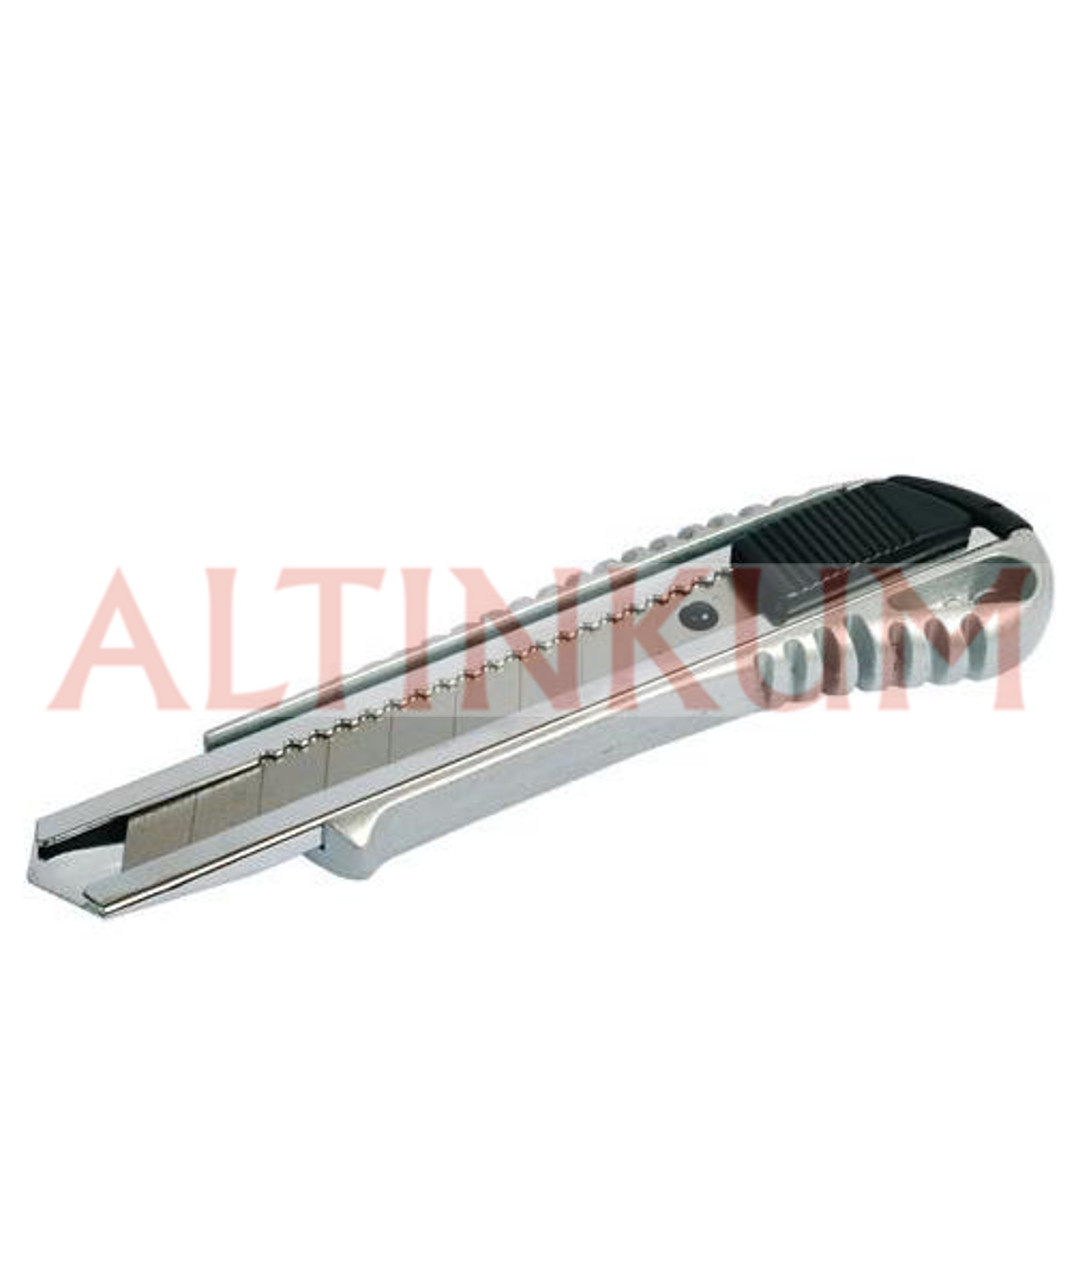 Fors 18mm Alüminyum Geniş Maket Bıçağı ( Falçata )